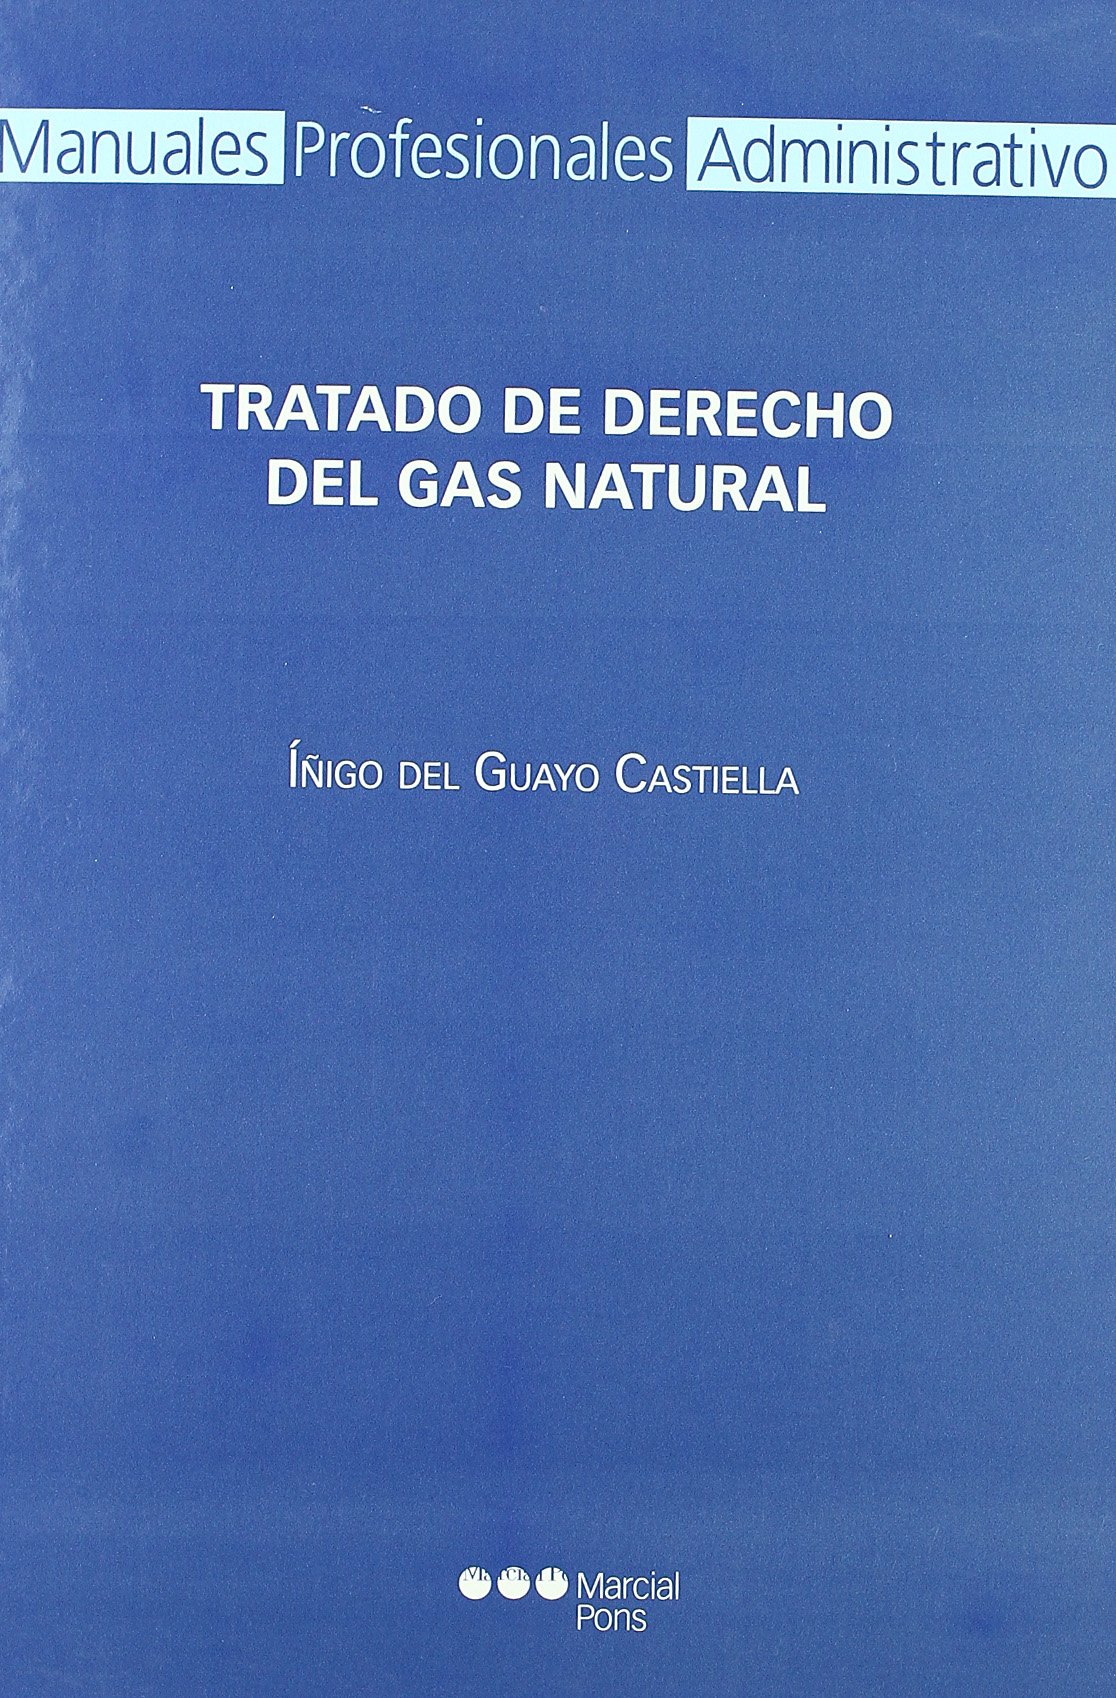 TRATADO DERECHO GAS NATURAL